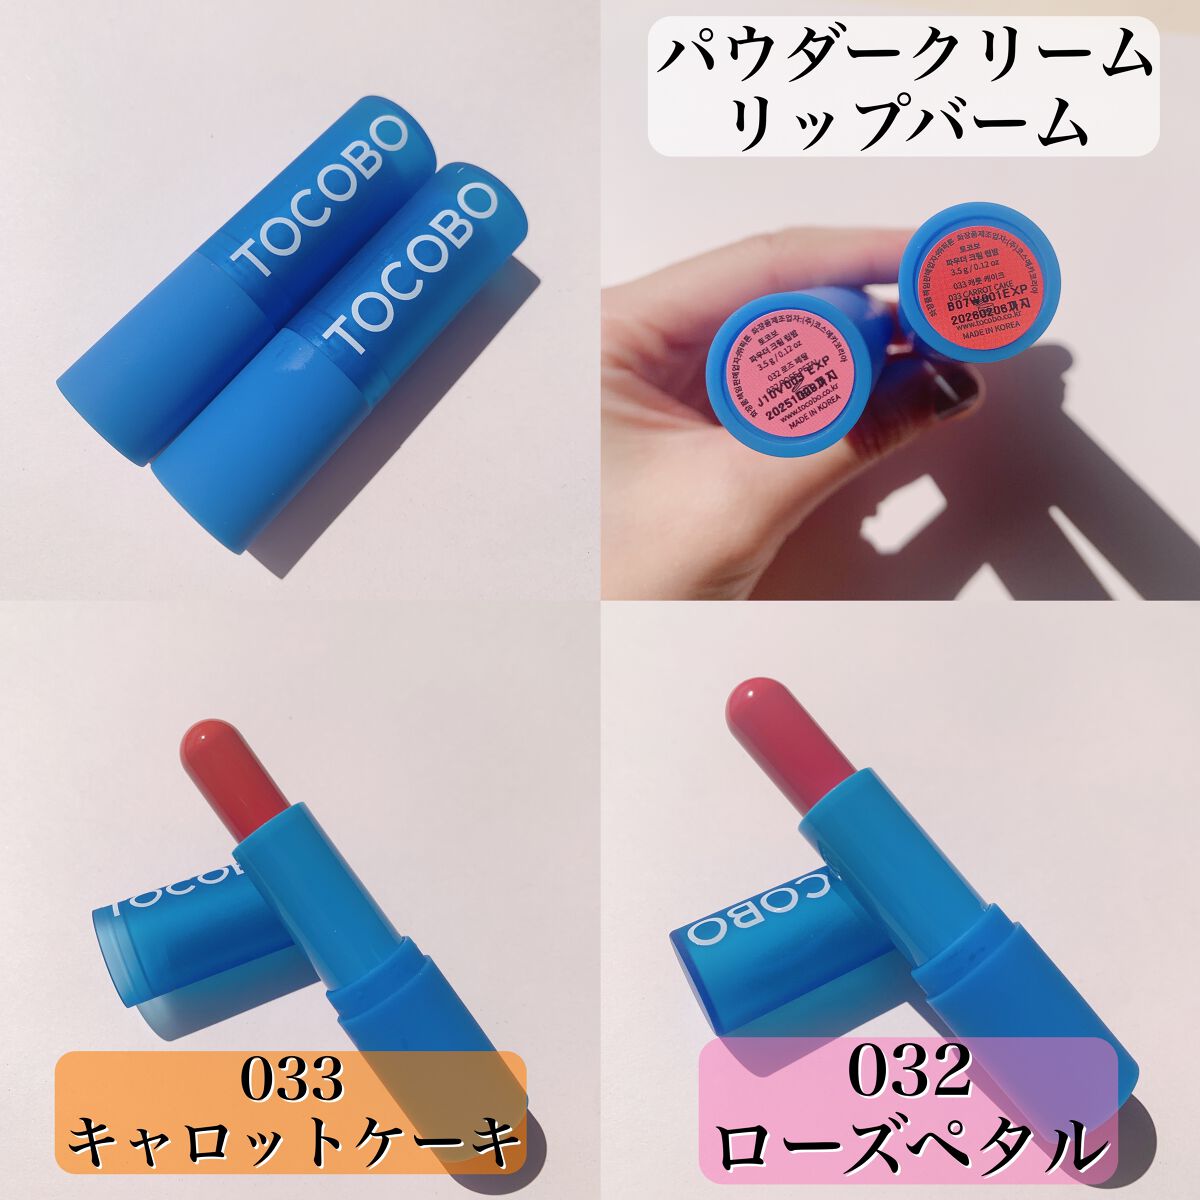 TOCOBOのリップケア・リップクリーム Glass Tinted Lip Balm他、2商品